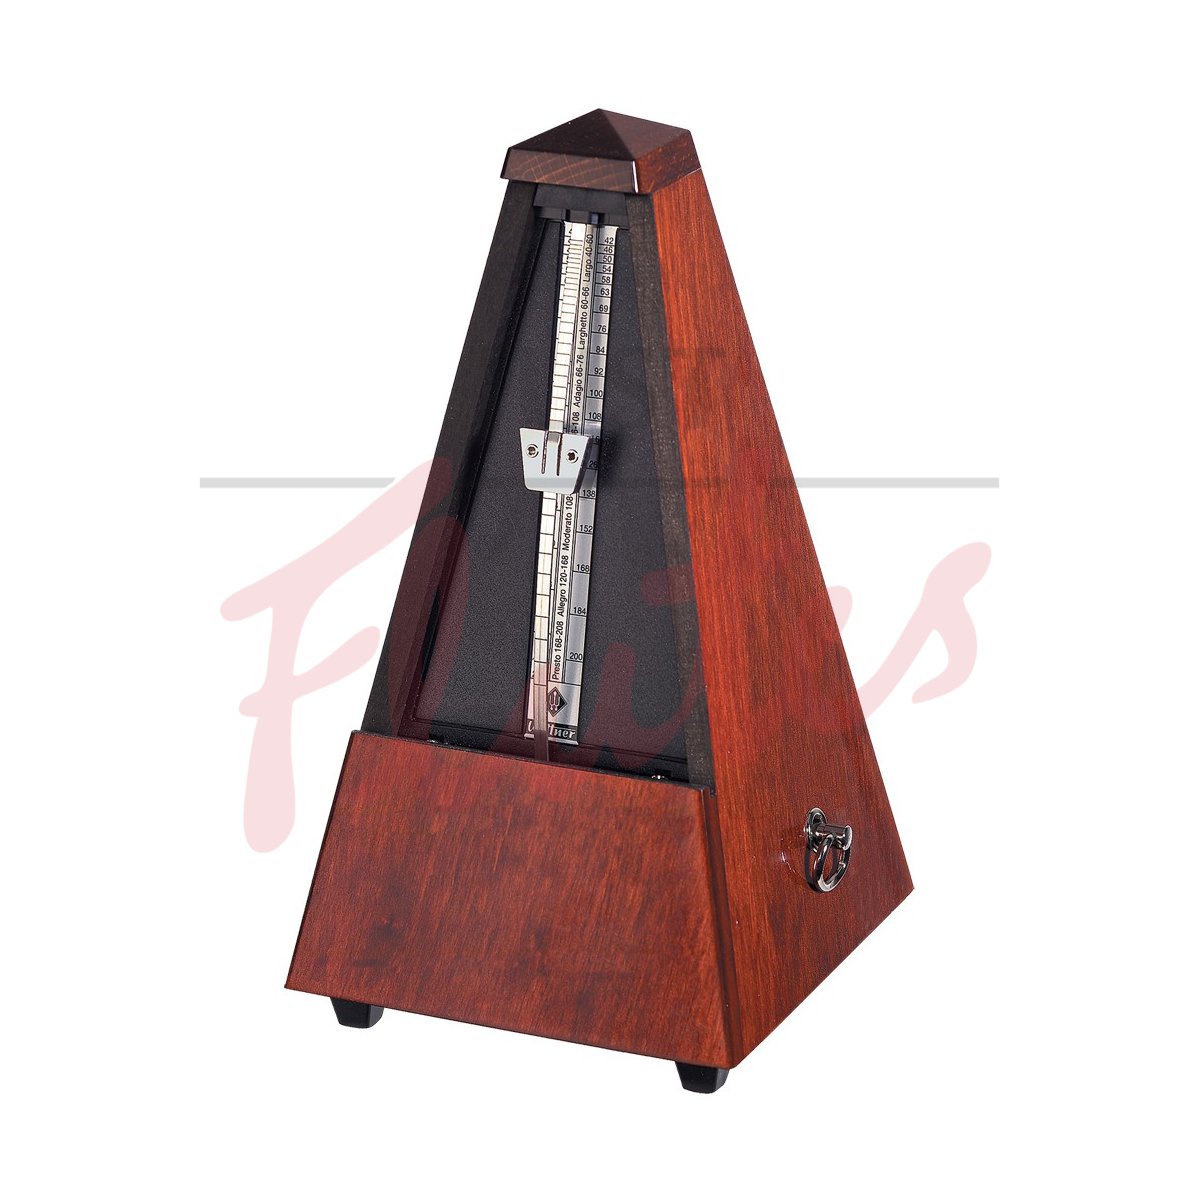 Wittner 801 Pyramid Metronome, Wood, Highly Polished Mahogany Finish